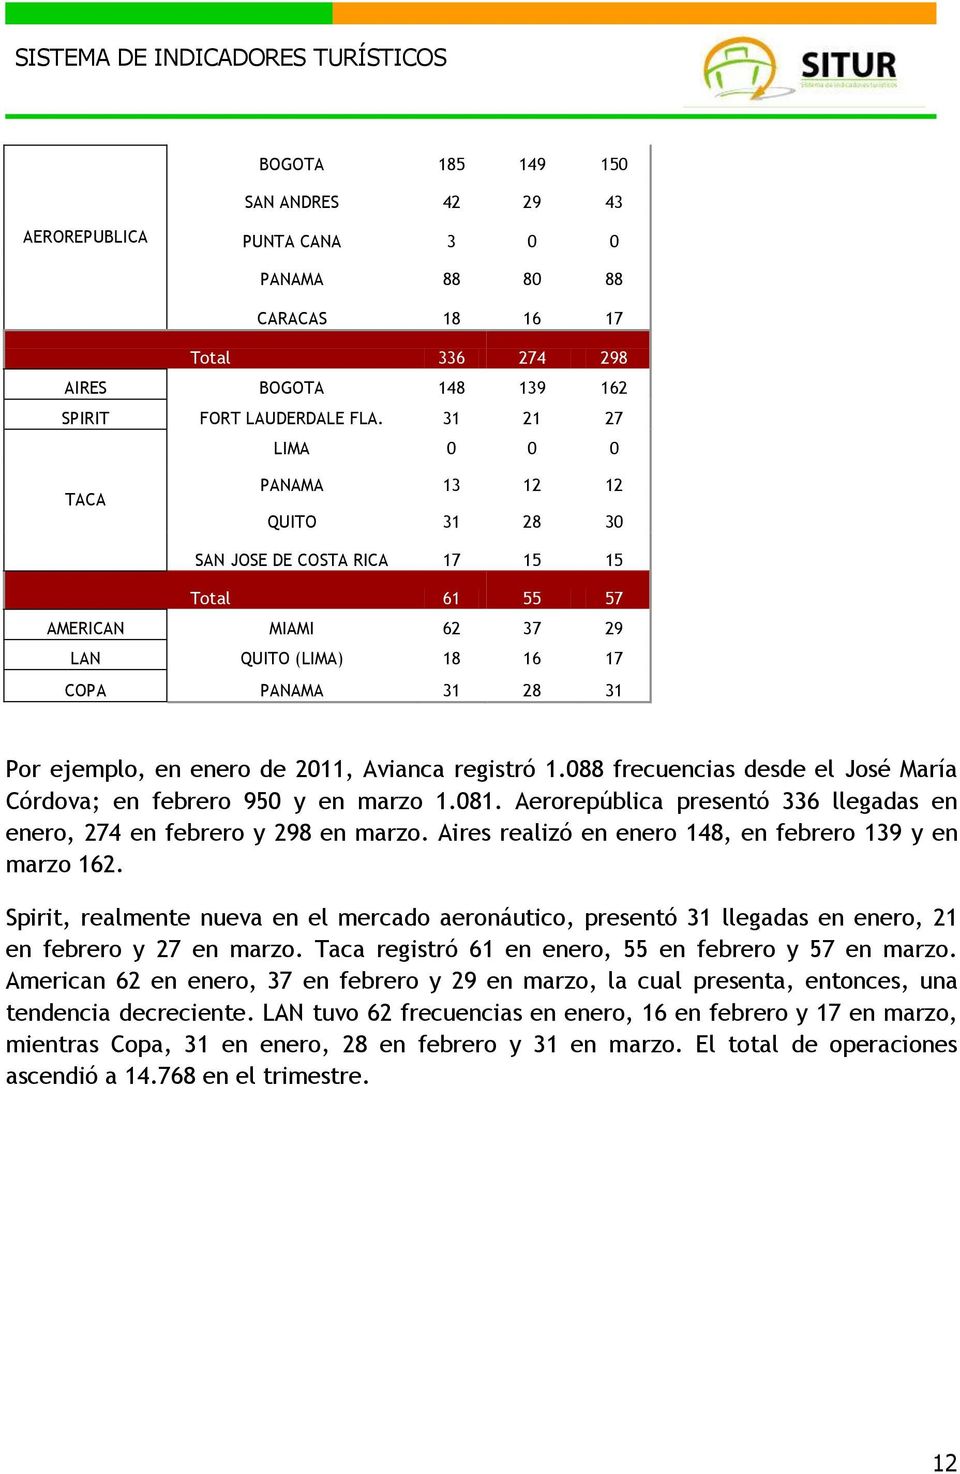 2011, Avianca registró 1.088 frecuencias desde el José María Córdova; en febrero 950 y en marzo 1.081. Aerorepública presentó 336 llegadas en enero, 274 en febrero y 298 en marzo.